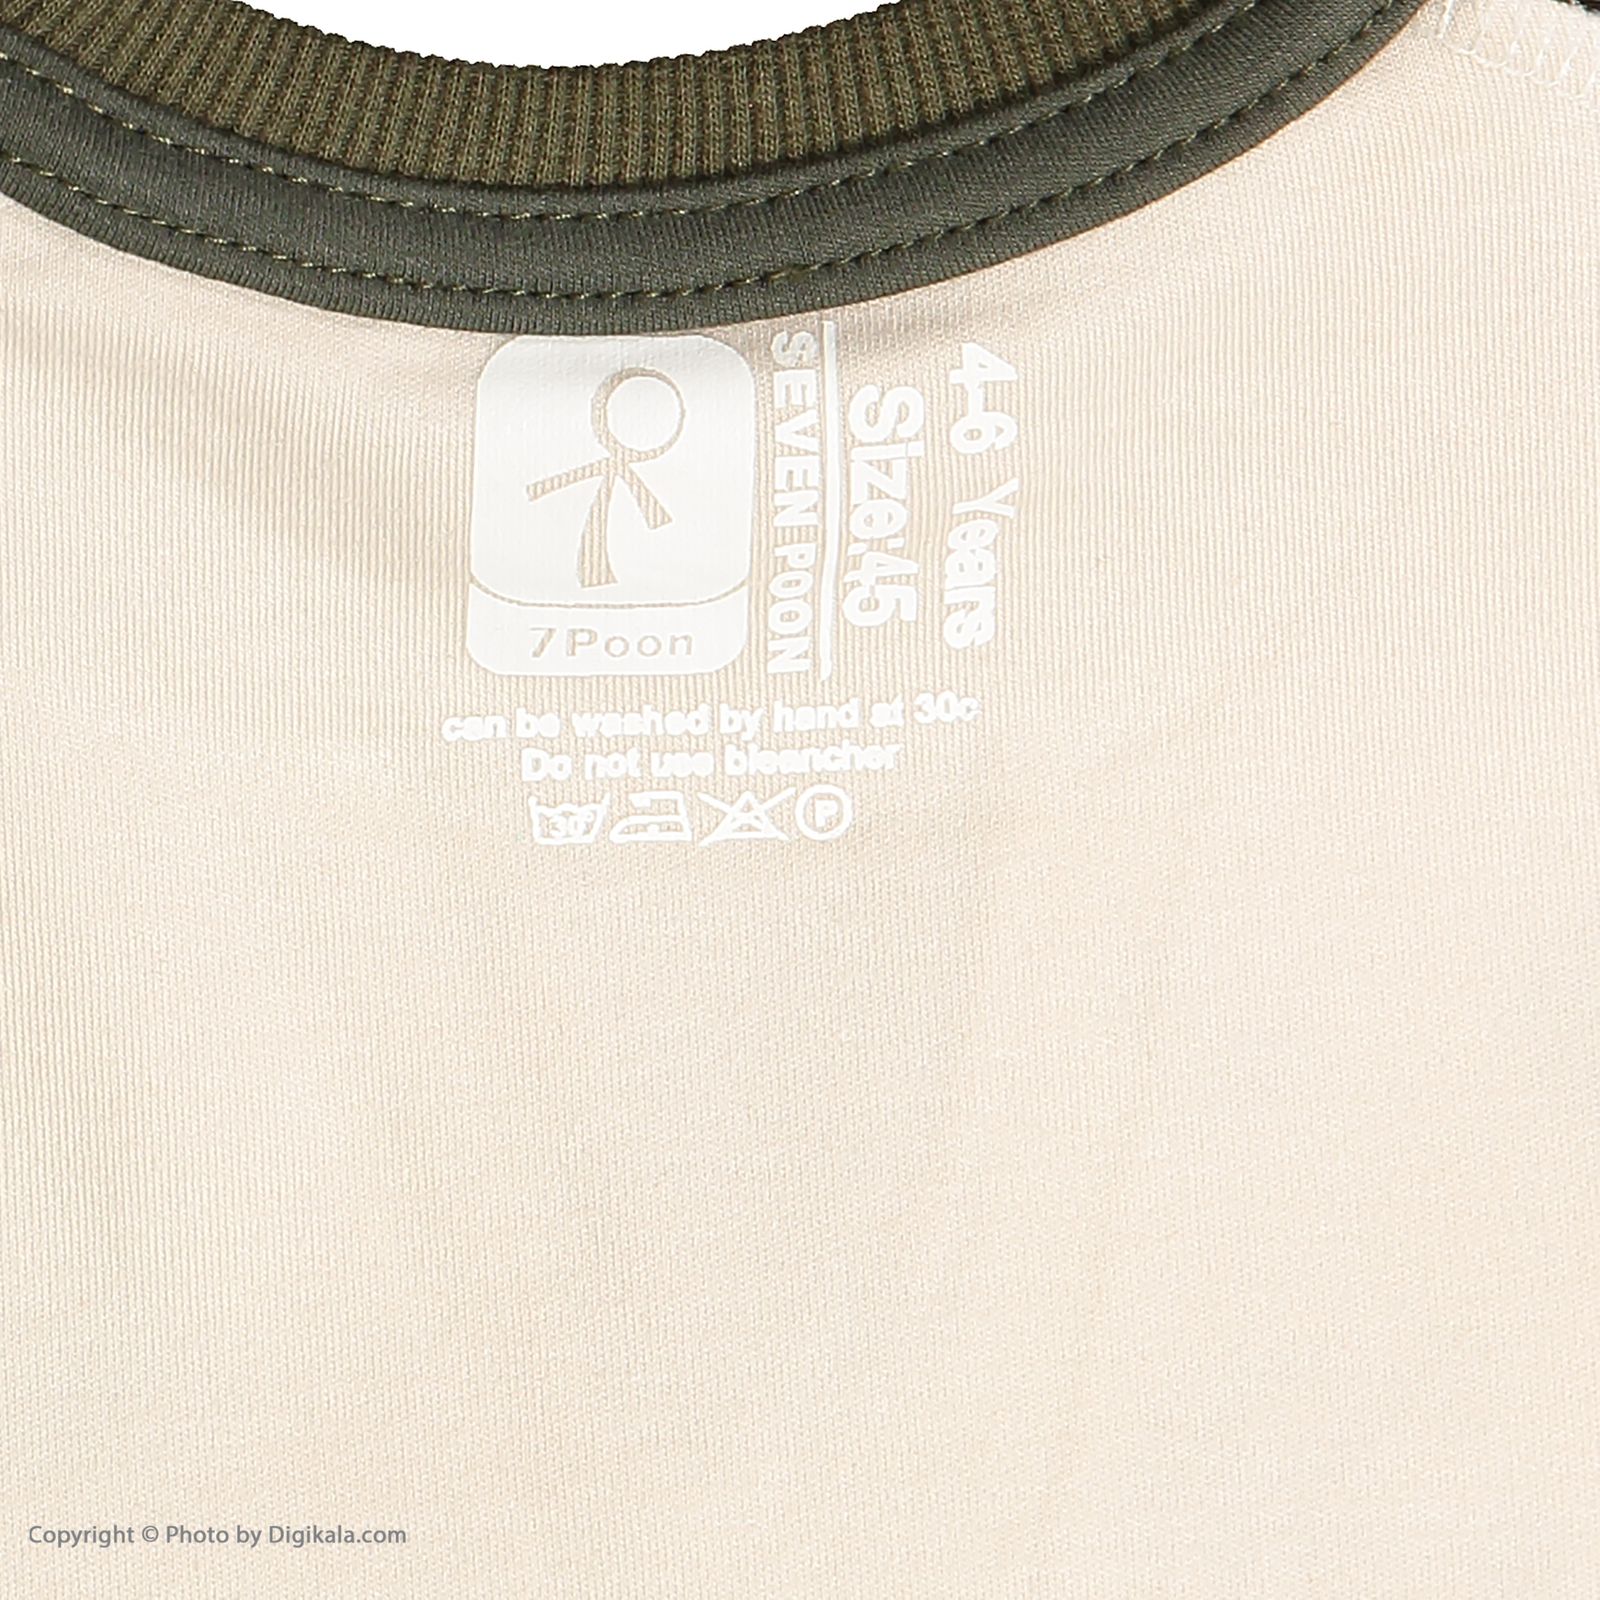 تی شرت پسرانه سون پون مدل 1391618-4905 -  - 5